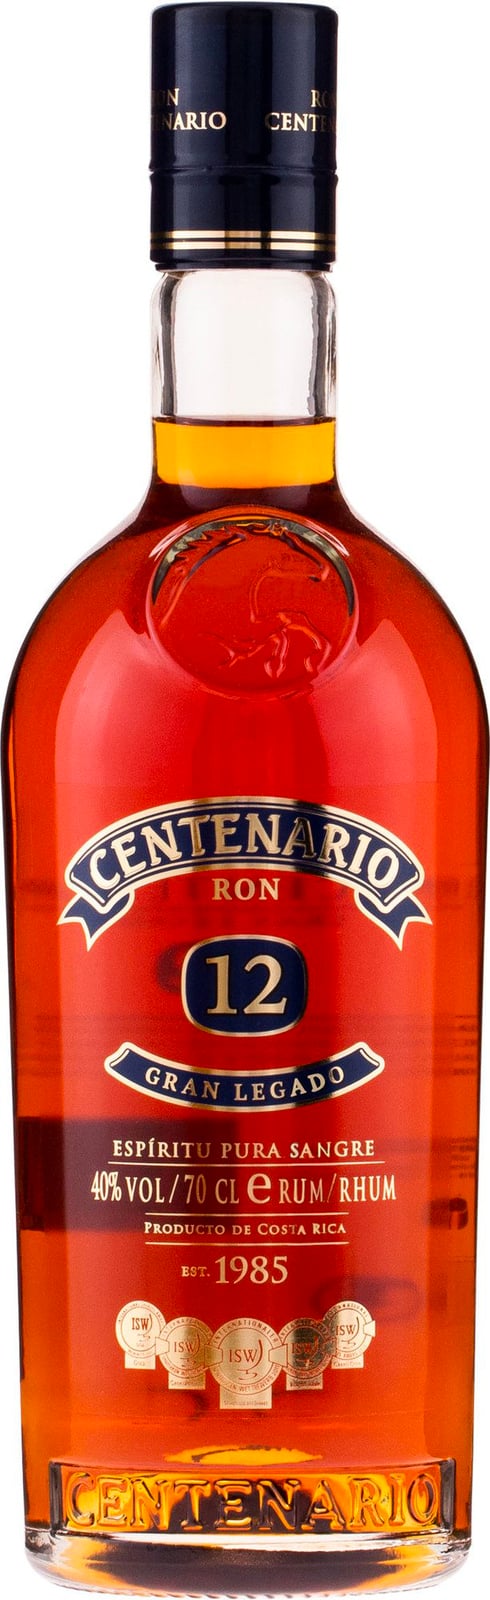 Ron Centenario Gran 12 year Rum Legado